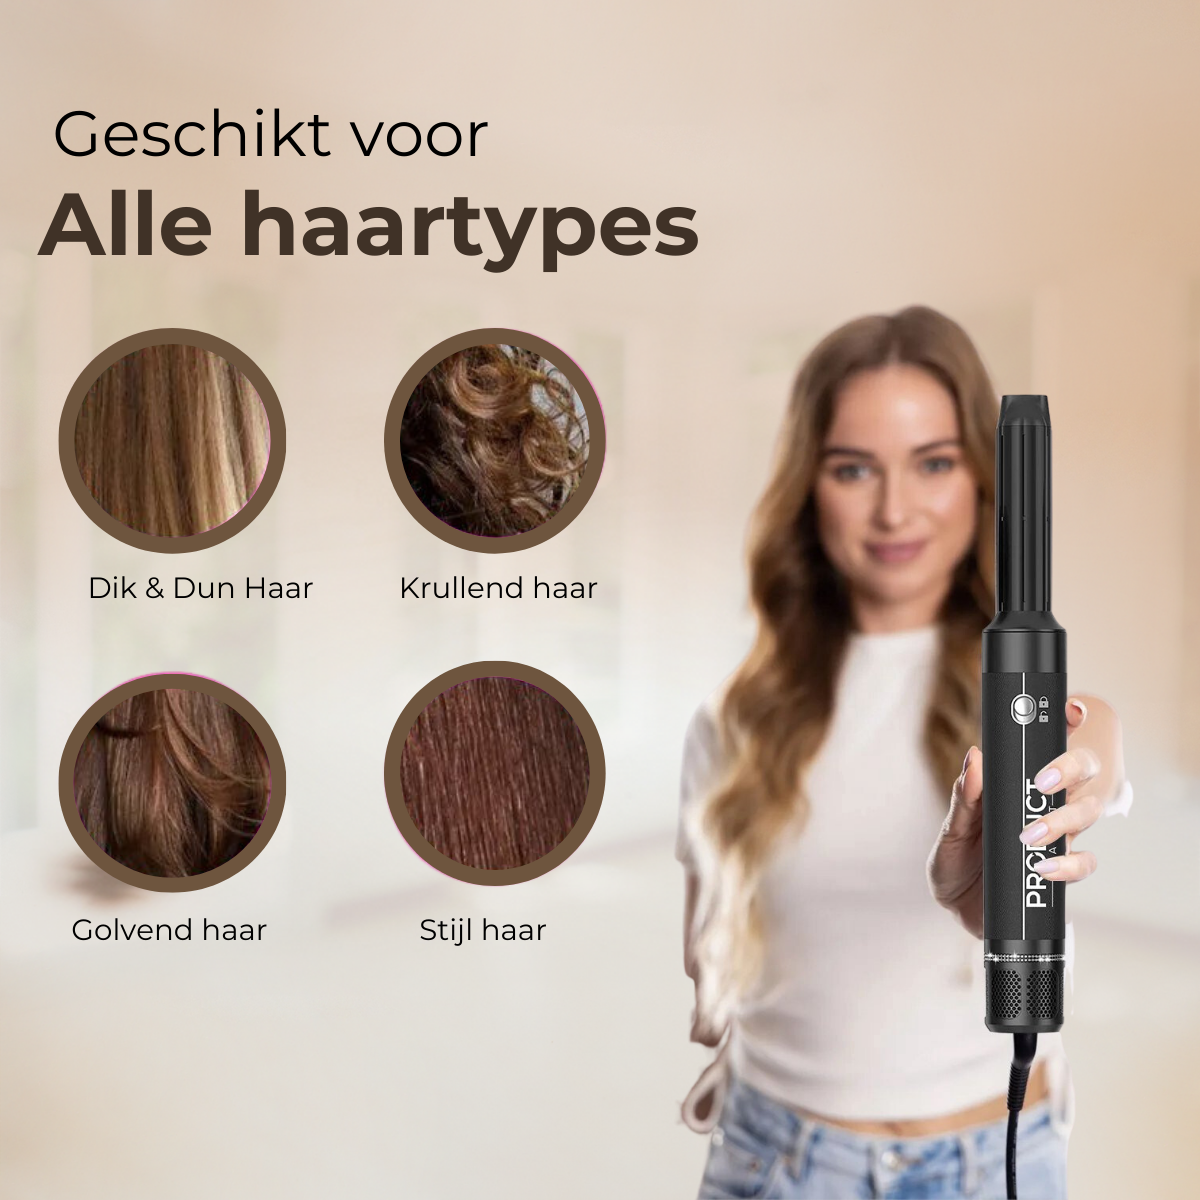 Geschikt voor alle haartypes: onze veelzijdige airstyler biedt professionele stylingopties voor iedereen, ongeacht haartextuur.